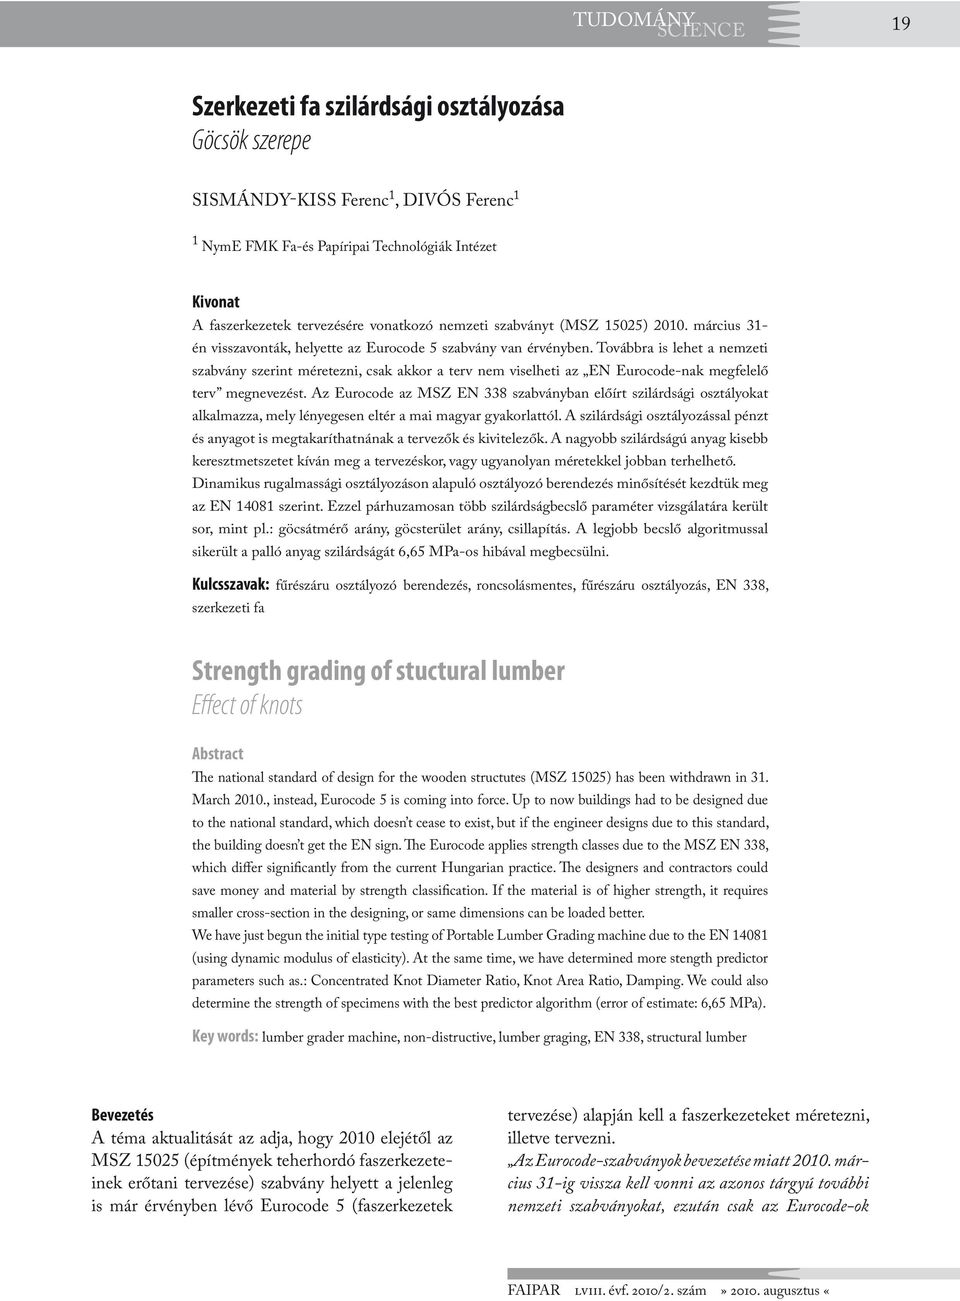 Szerkezeti fa szilárdsági osztályozása Göcsök szerepe. Strength grading of  stuctural lumber Effect of knots - PDF Free Download